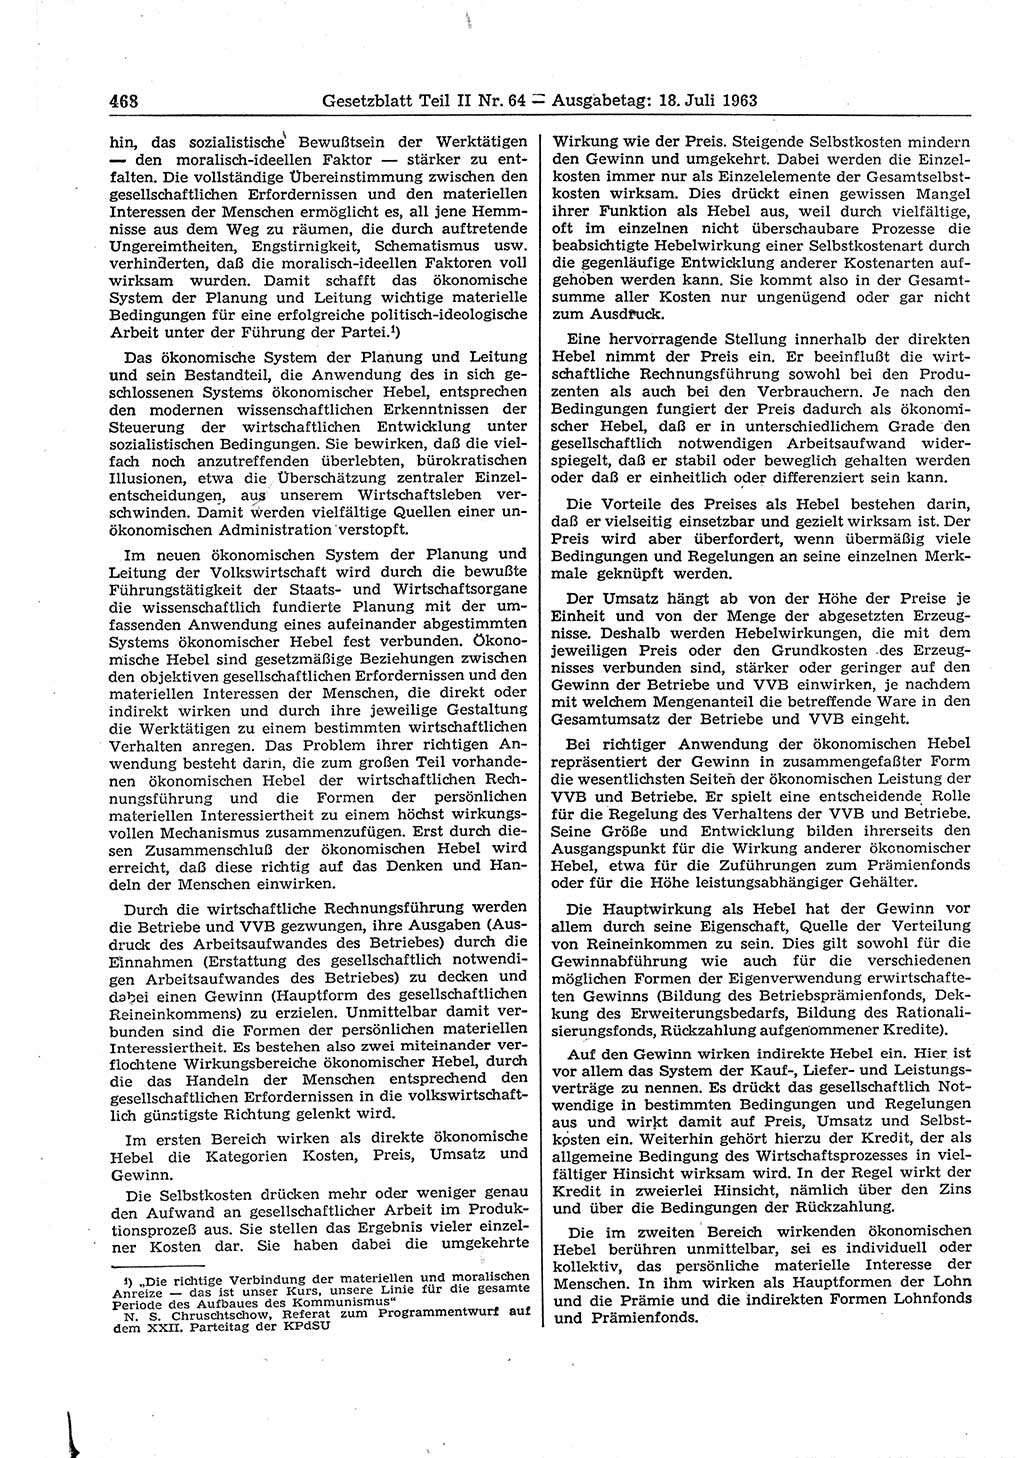 Gesetzblatt (GBl.) der Deutschen Demokratischen Republik (DDR) Teil ⅠⅠ 1963, Seite 468 (GBl. DDR ⅠⅠ 1963, S. 468)